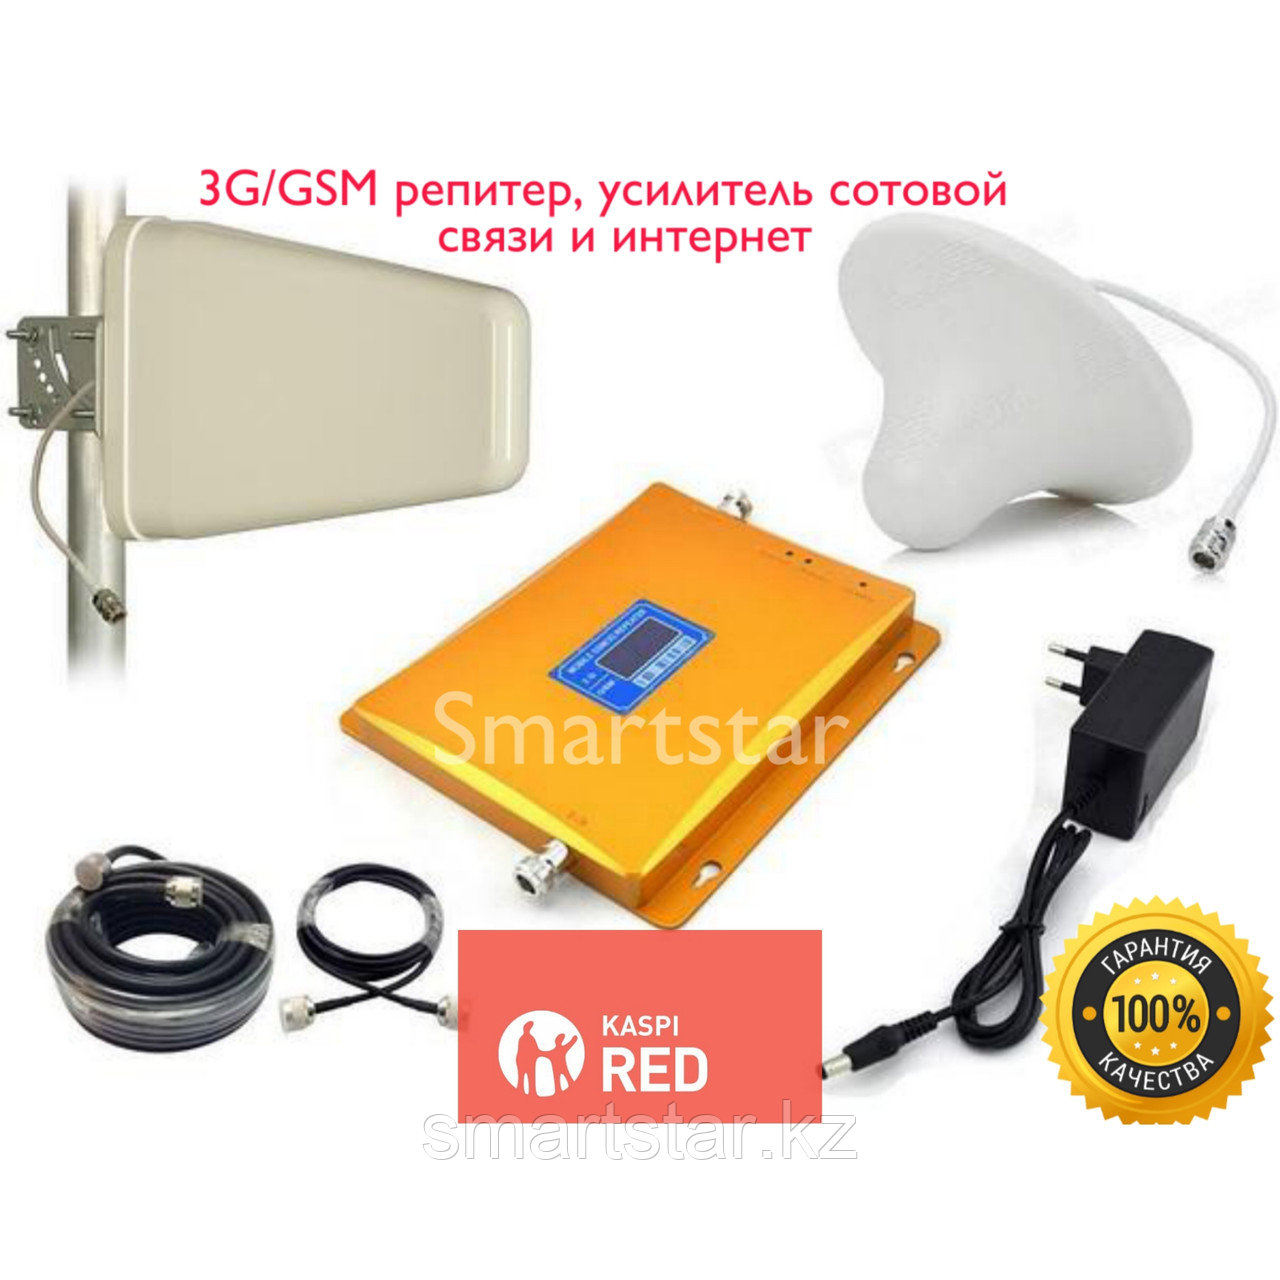 GSM/3G Репитер Усилитель мобильной связи Original